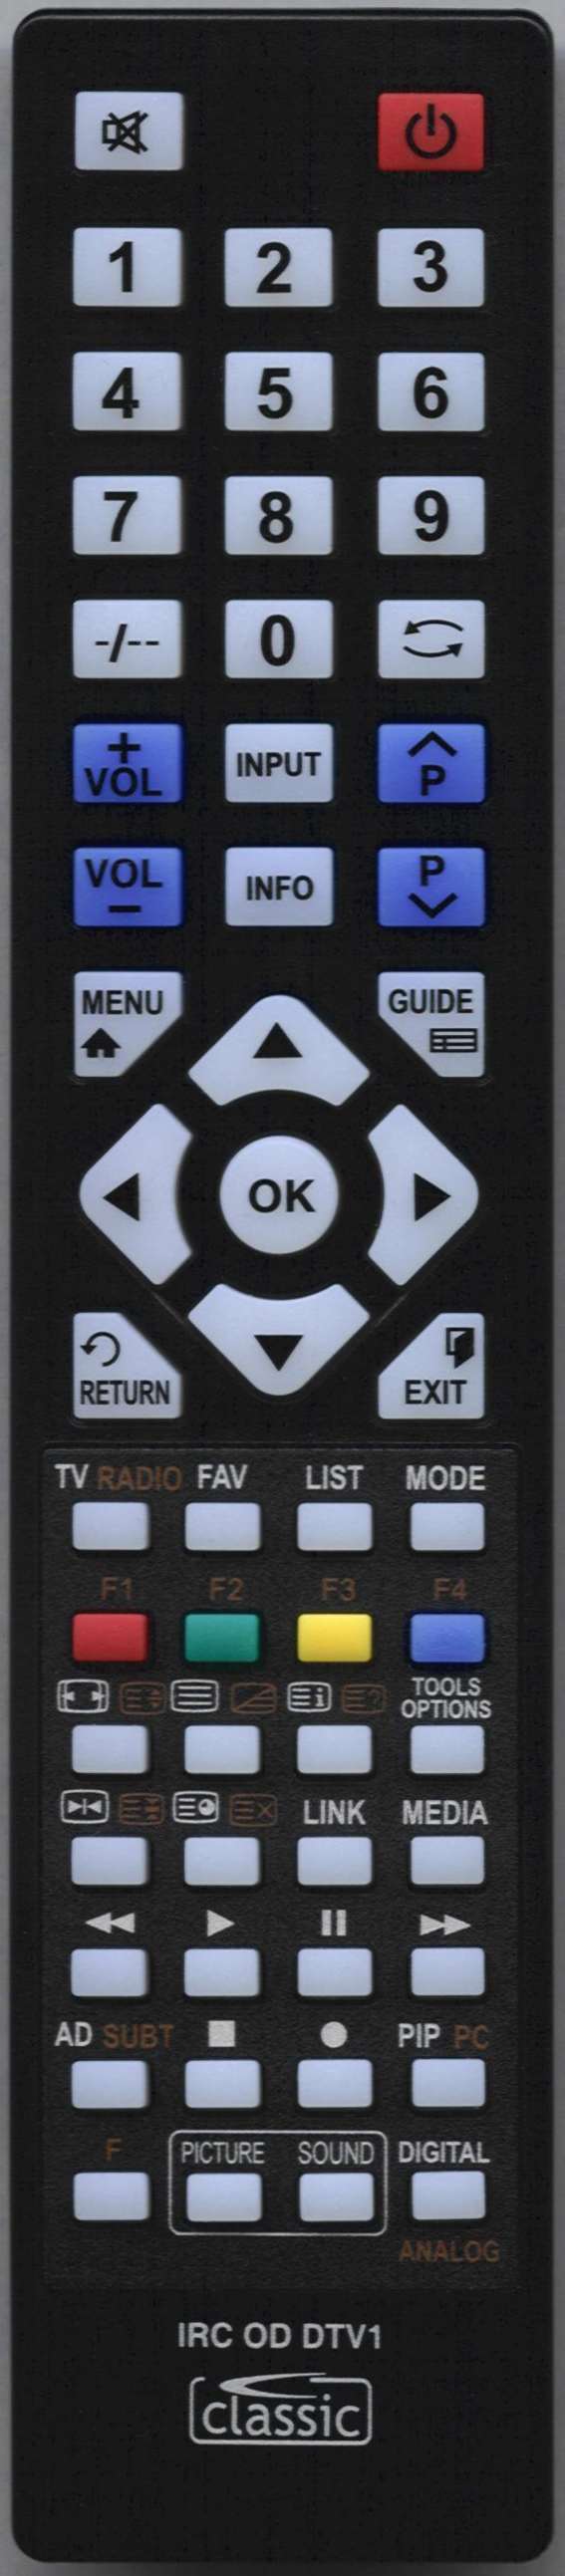 Sony KDL-32W705B Remote Control Alternative